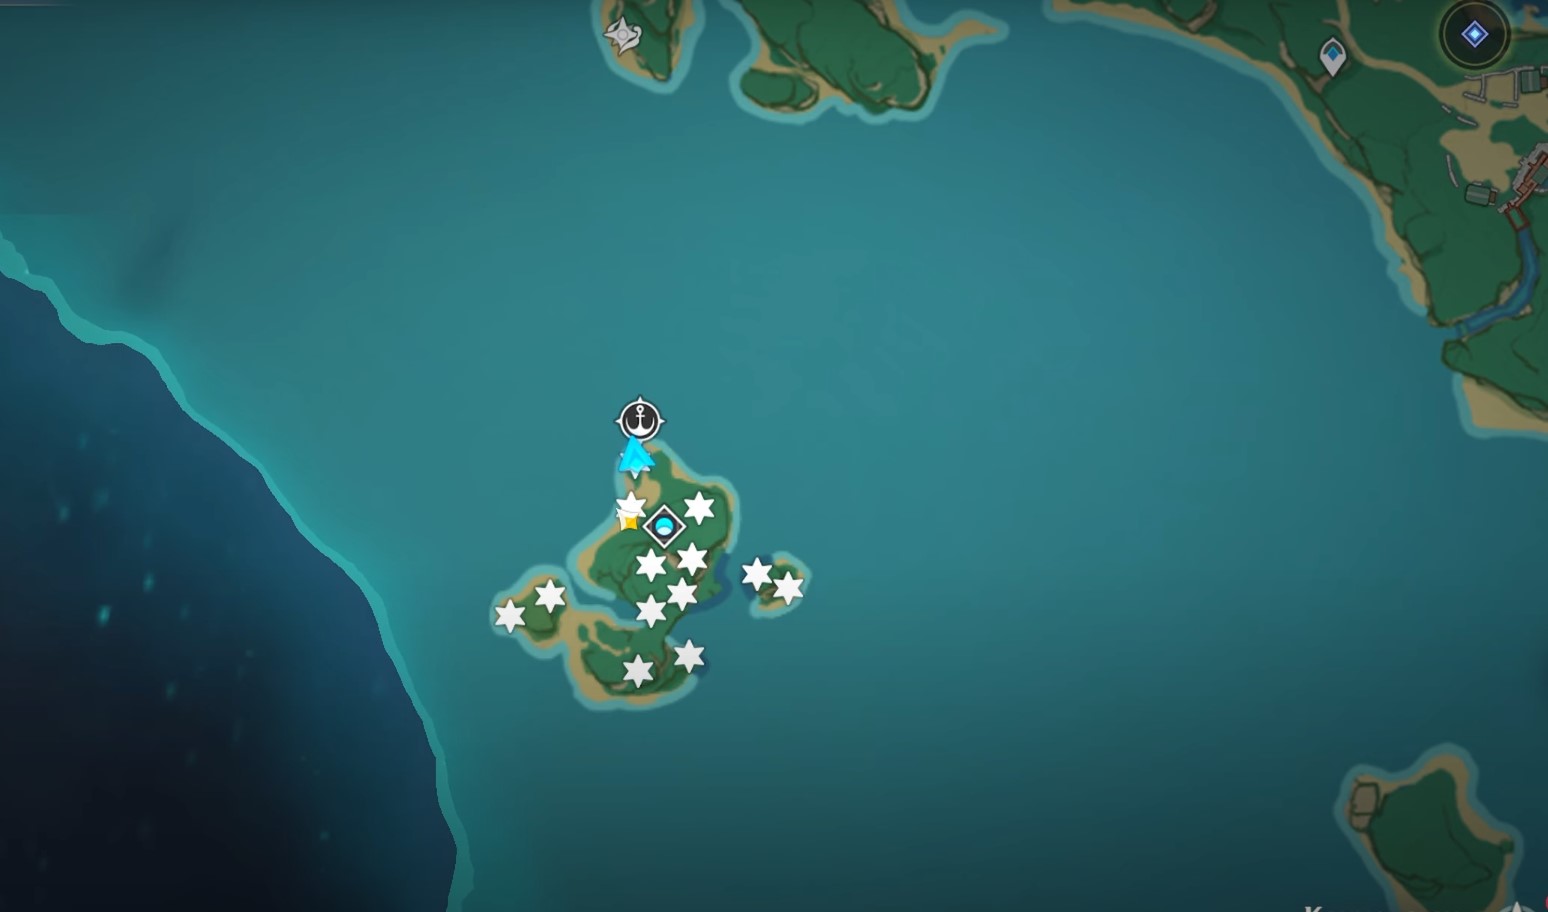 Инадзума геншин головоломки. Остров ясиори Геншин Импакт на карте. Сундуки Инадзума Геншин. Инадзума Геншин острова. Геншин Импакт остров Инадзума.